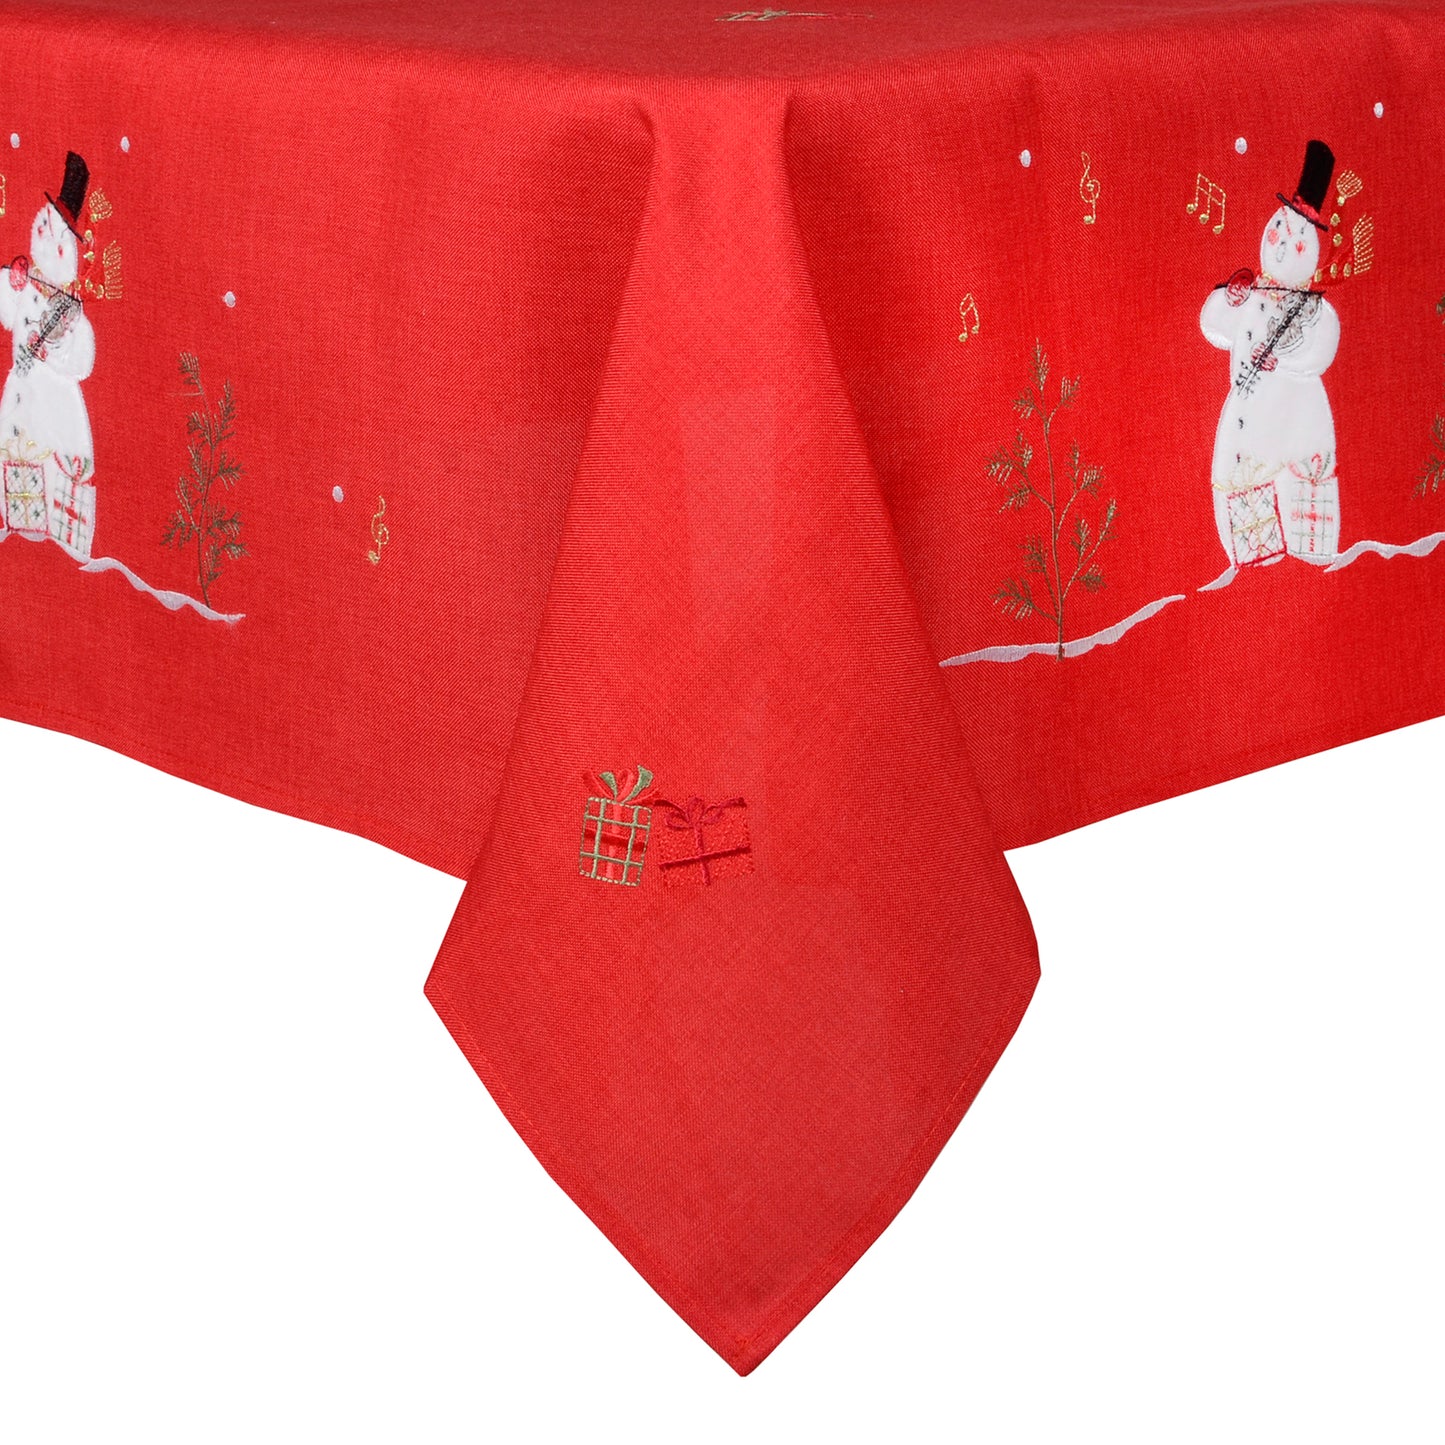 Mr Crimbo Singing Snowmen Embroidered Tablecloth/Napkin - MrCrimbo.co.uk -XS5858 - 52 x 70" -christmas napkins